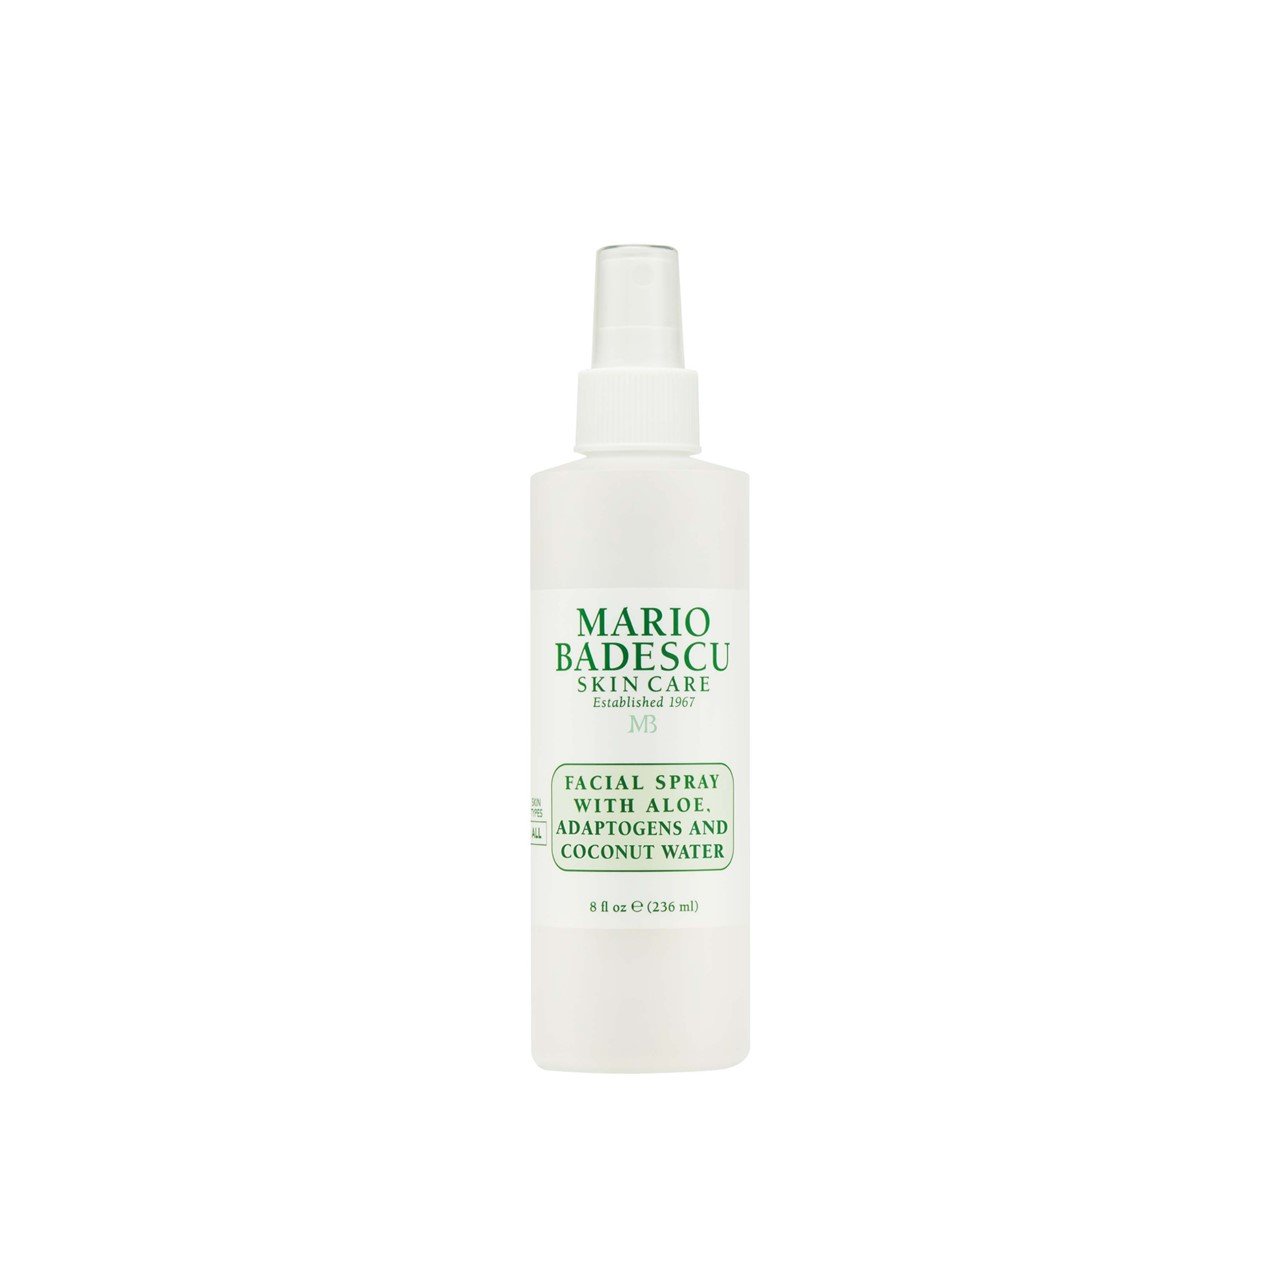 Mario Badescu Facial Spray With Aloe, Adaptogens & Coconut Water 236ml (8 fl oz)